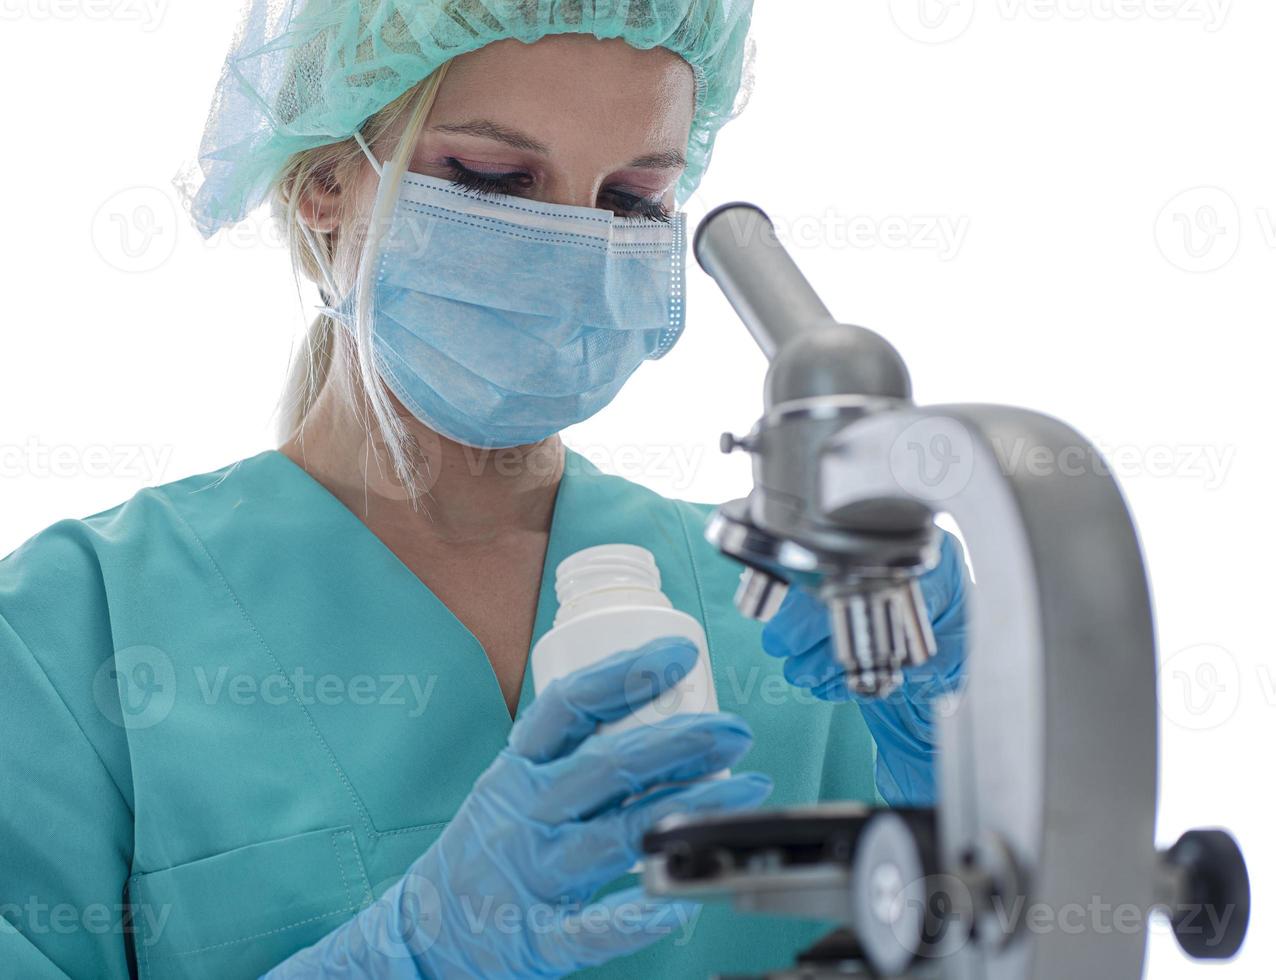 scienziato nel blu medico guanti e uniforme apprendimento covid-19 campioni con microscopio nel laboratorio. foto